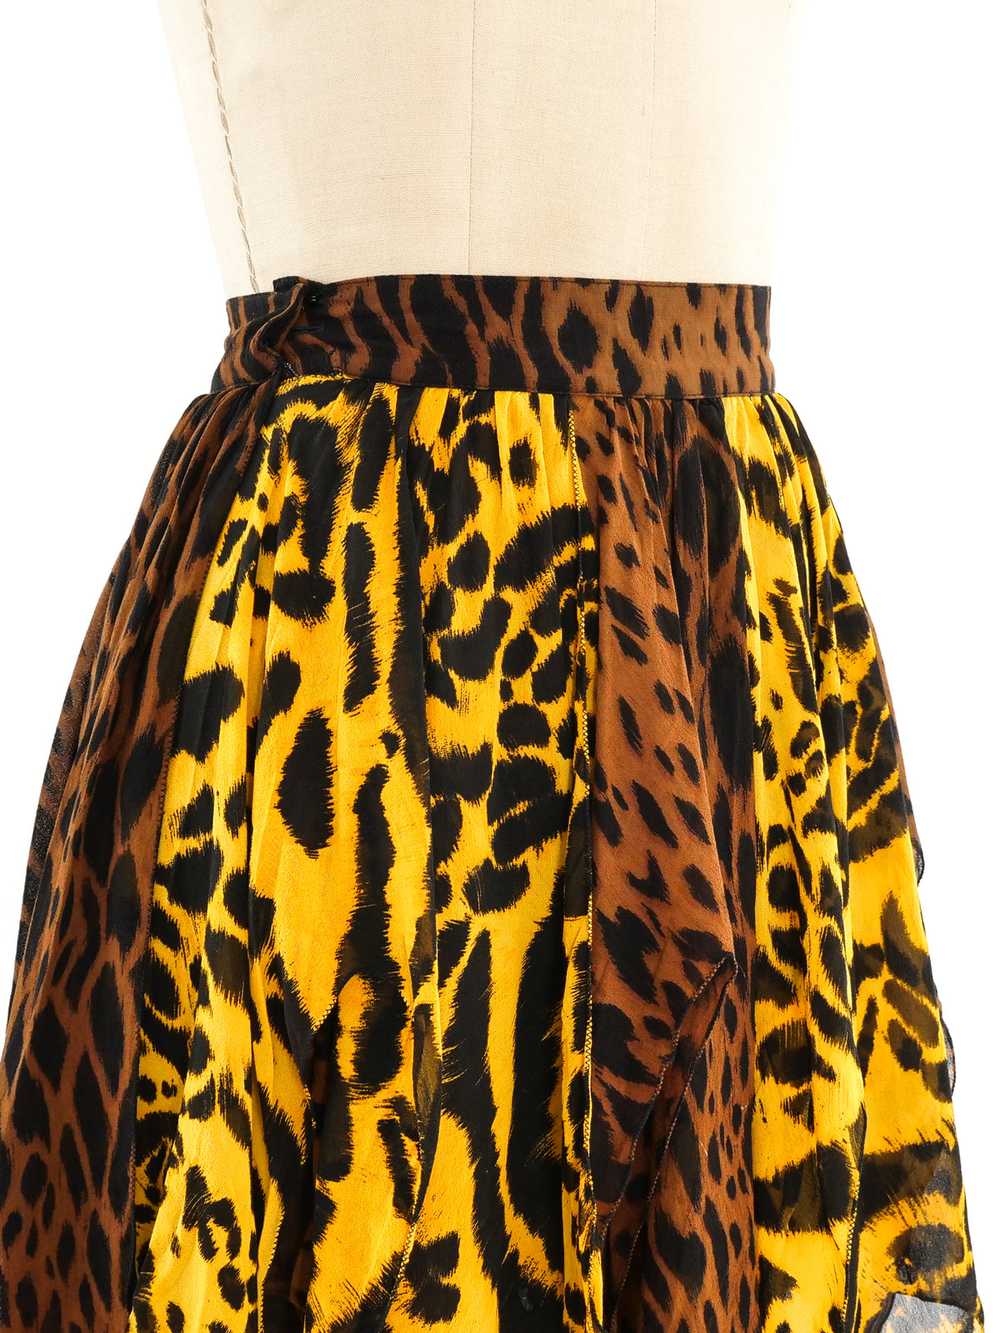 Gianni Versace Animal Printed Silk Skirt - image 4